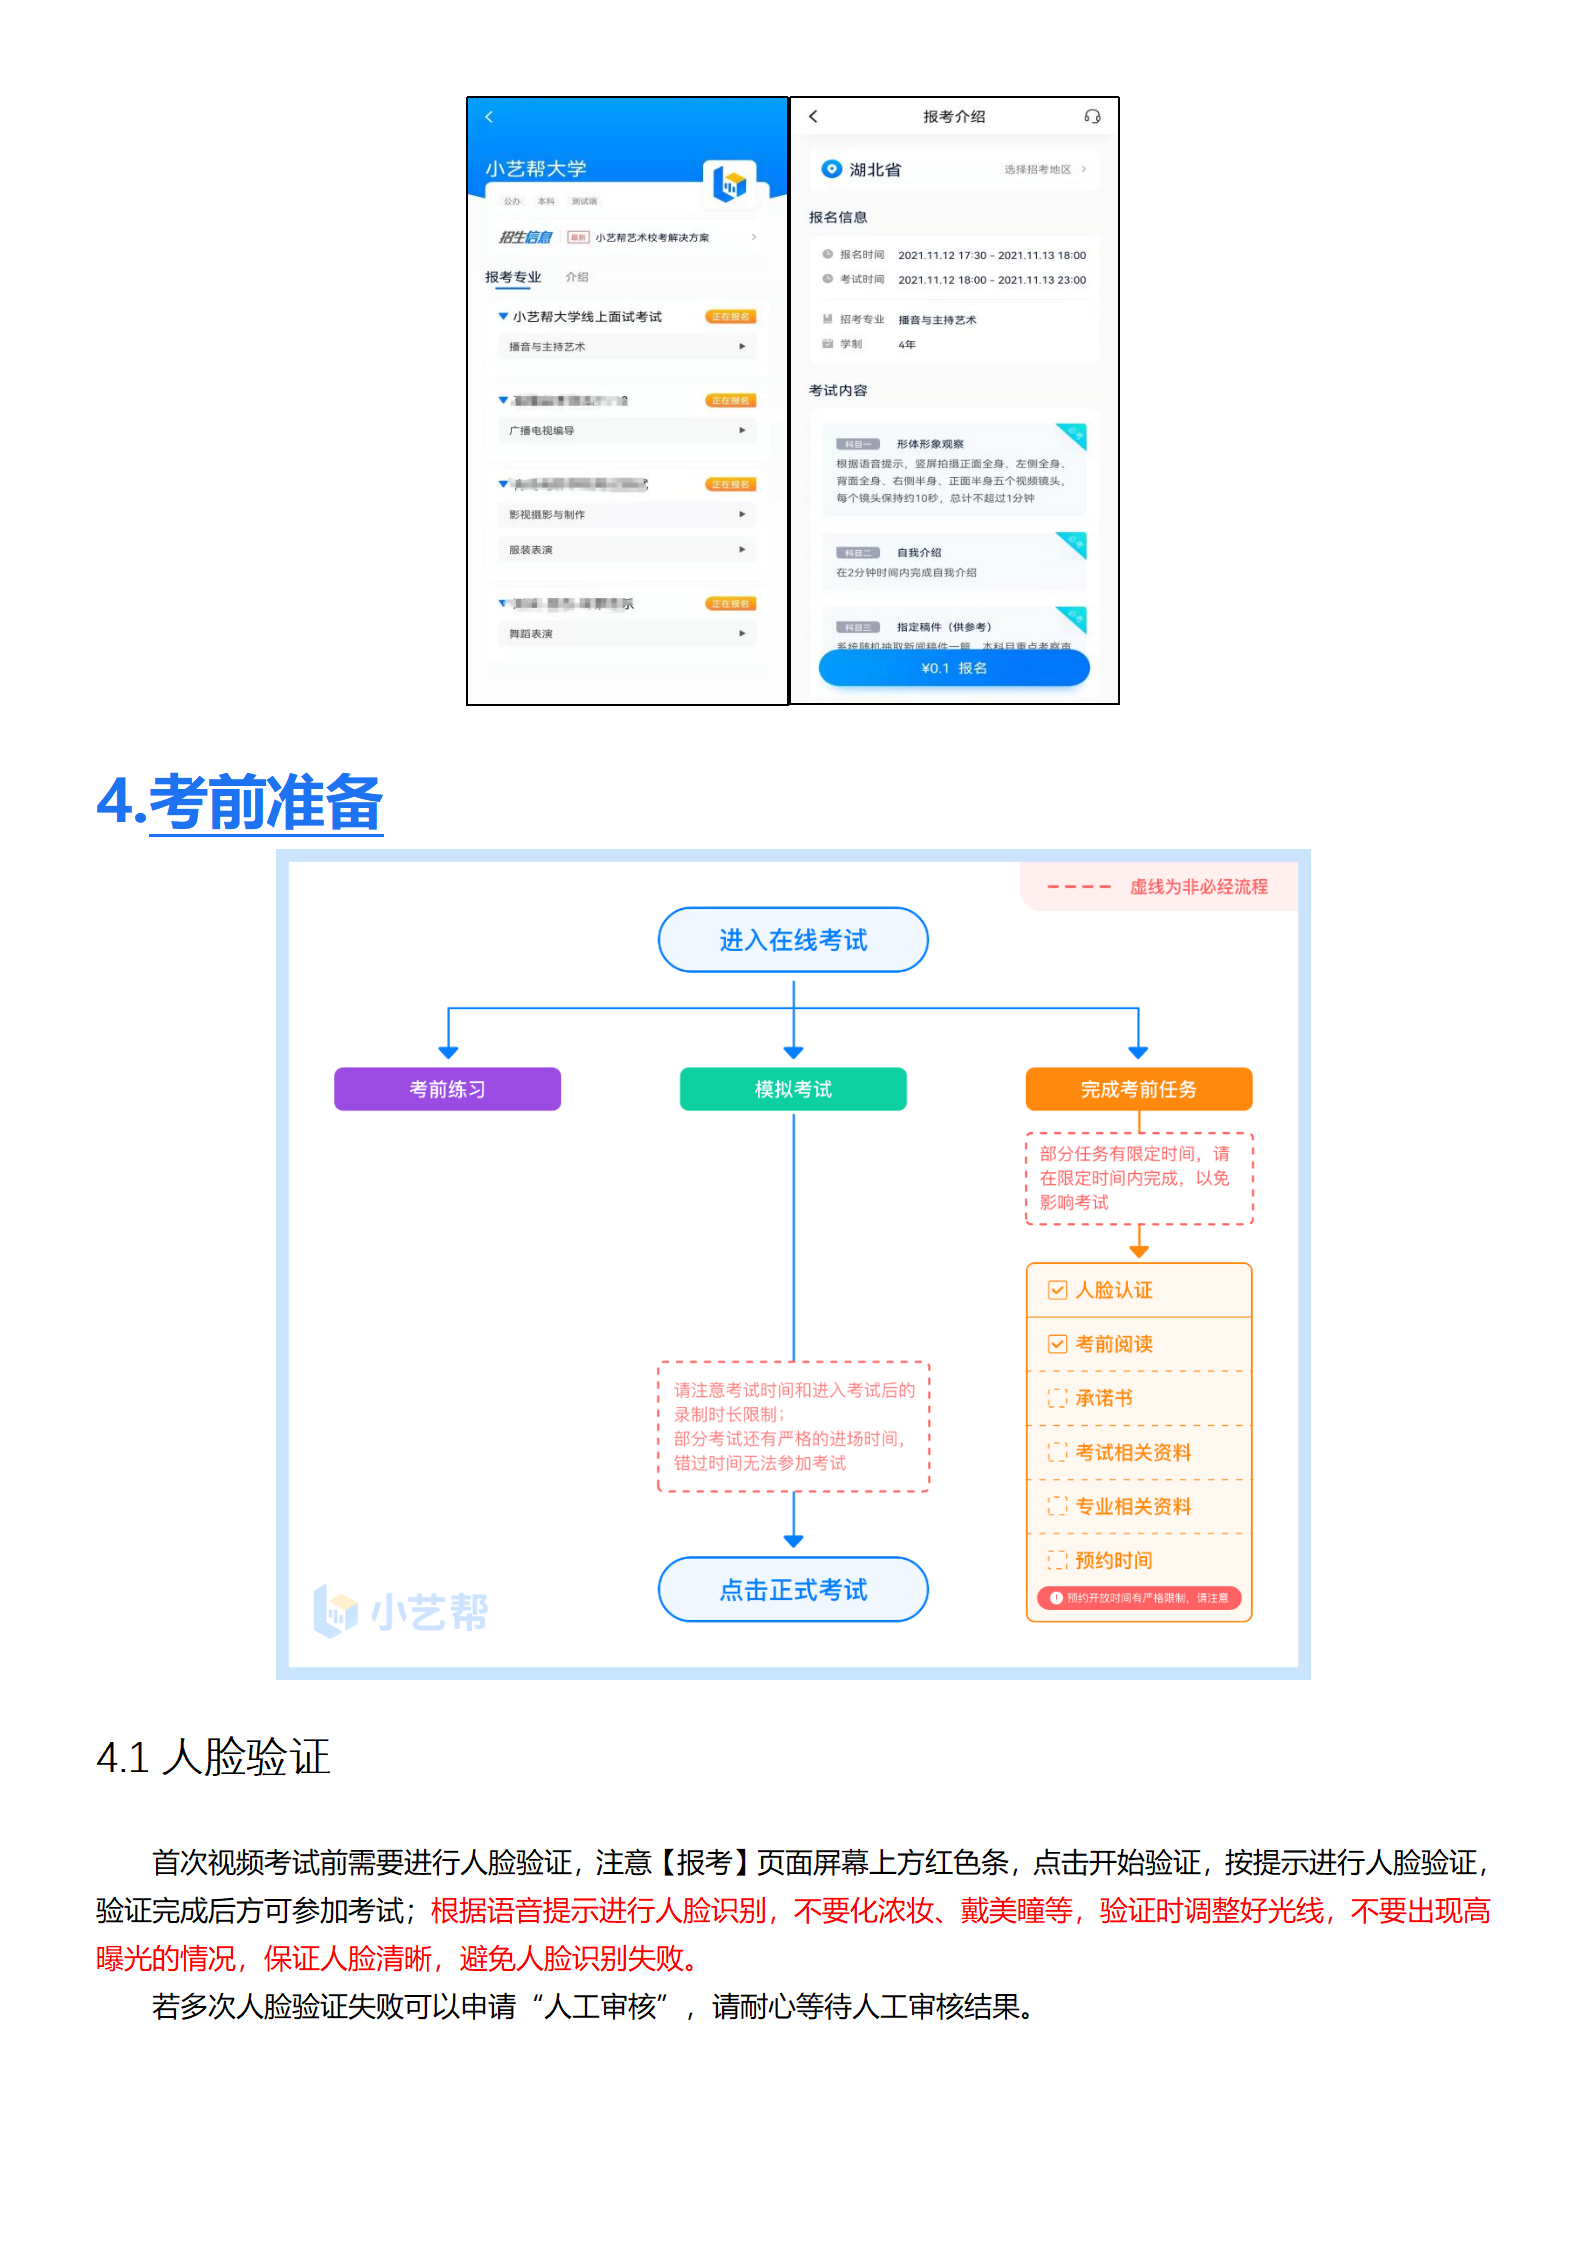 附件1：深圳大学-小艺帮4.0用户操作手册_05.png